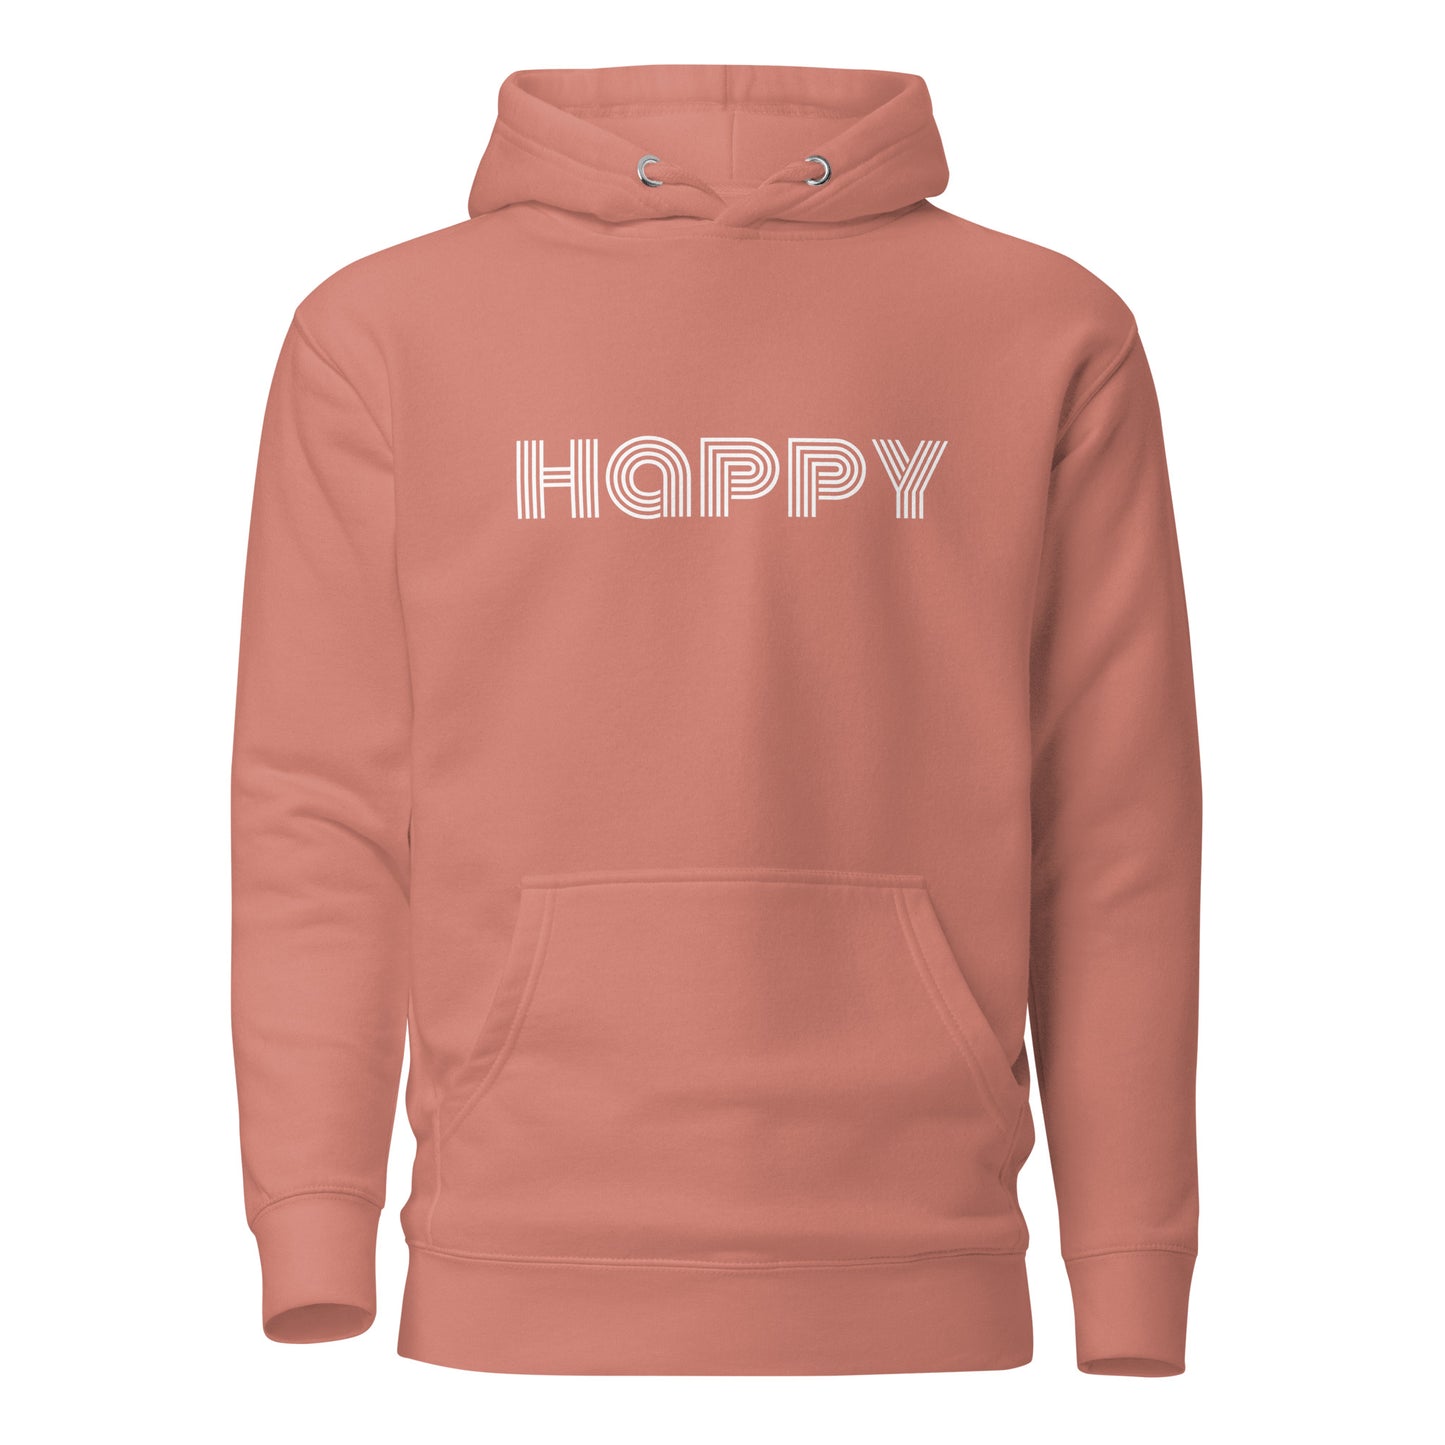 "HAPPY" Hoodie